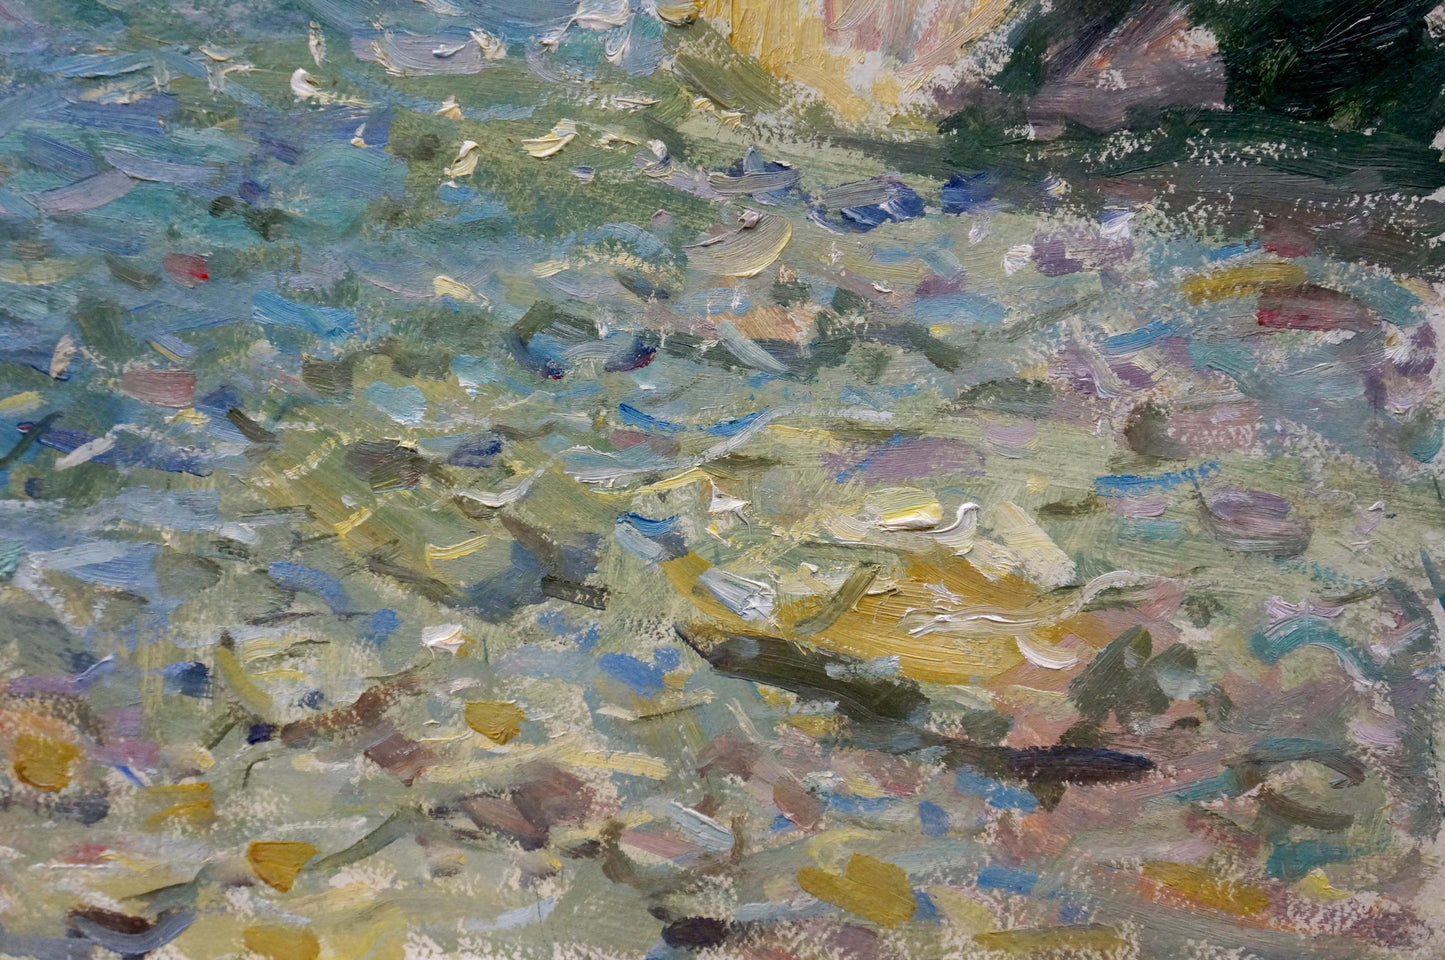 Filippov Z. I. explores the intricacies of the seashore in his oil artwork